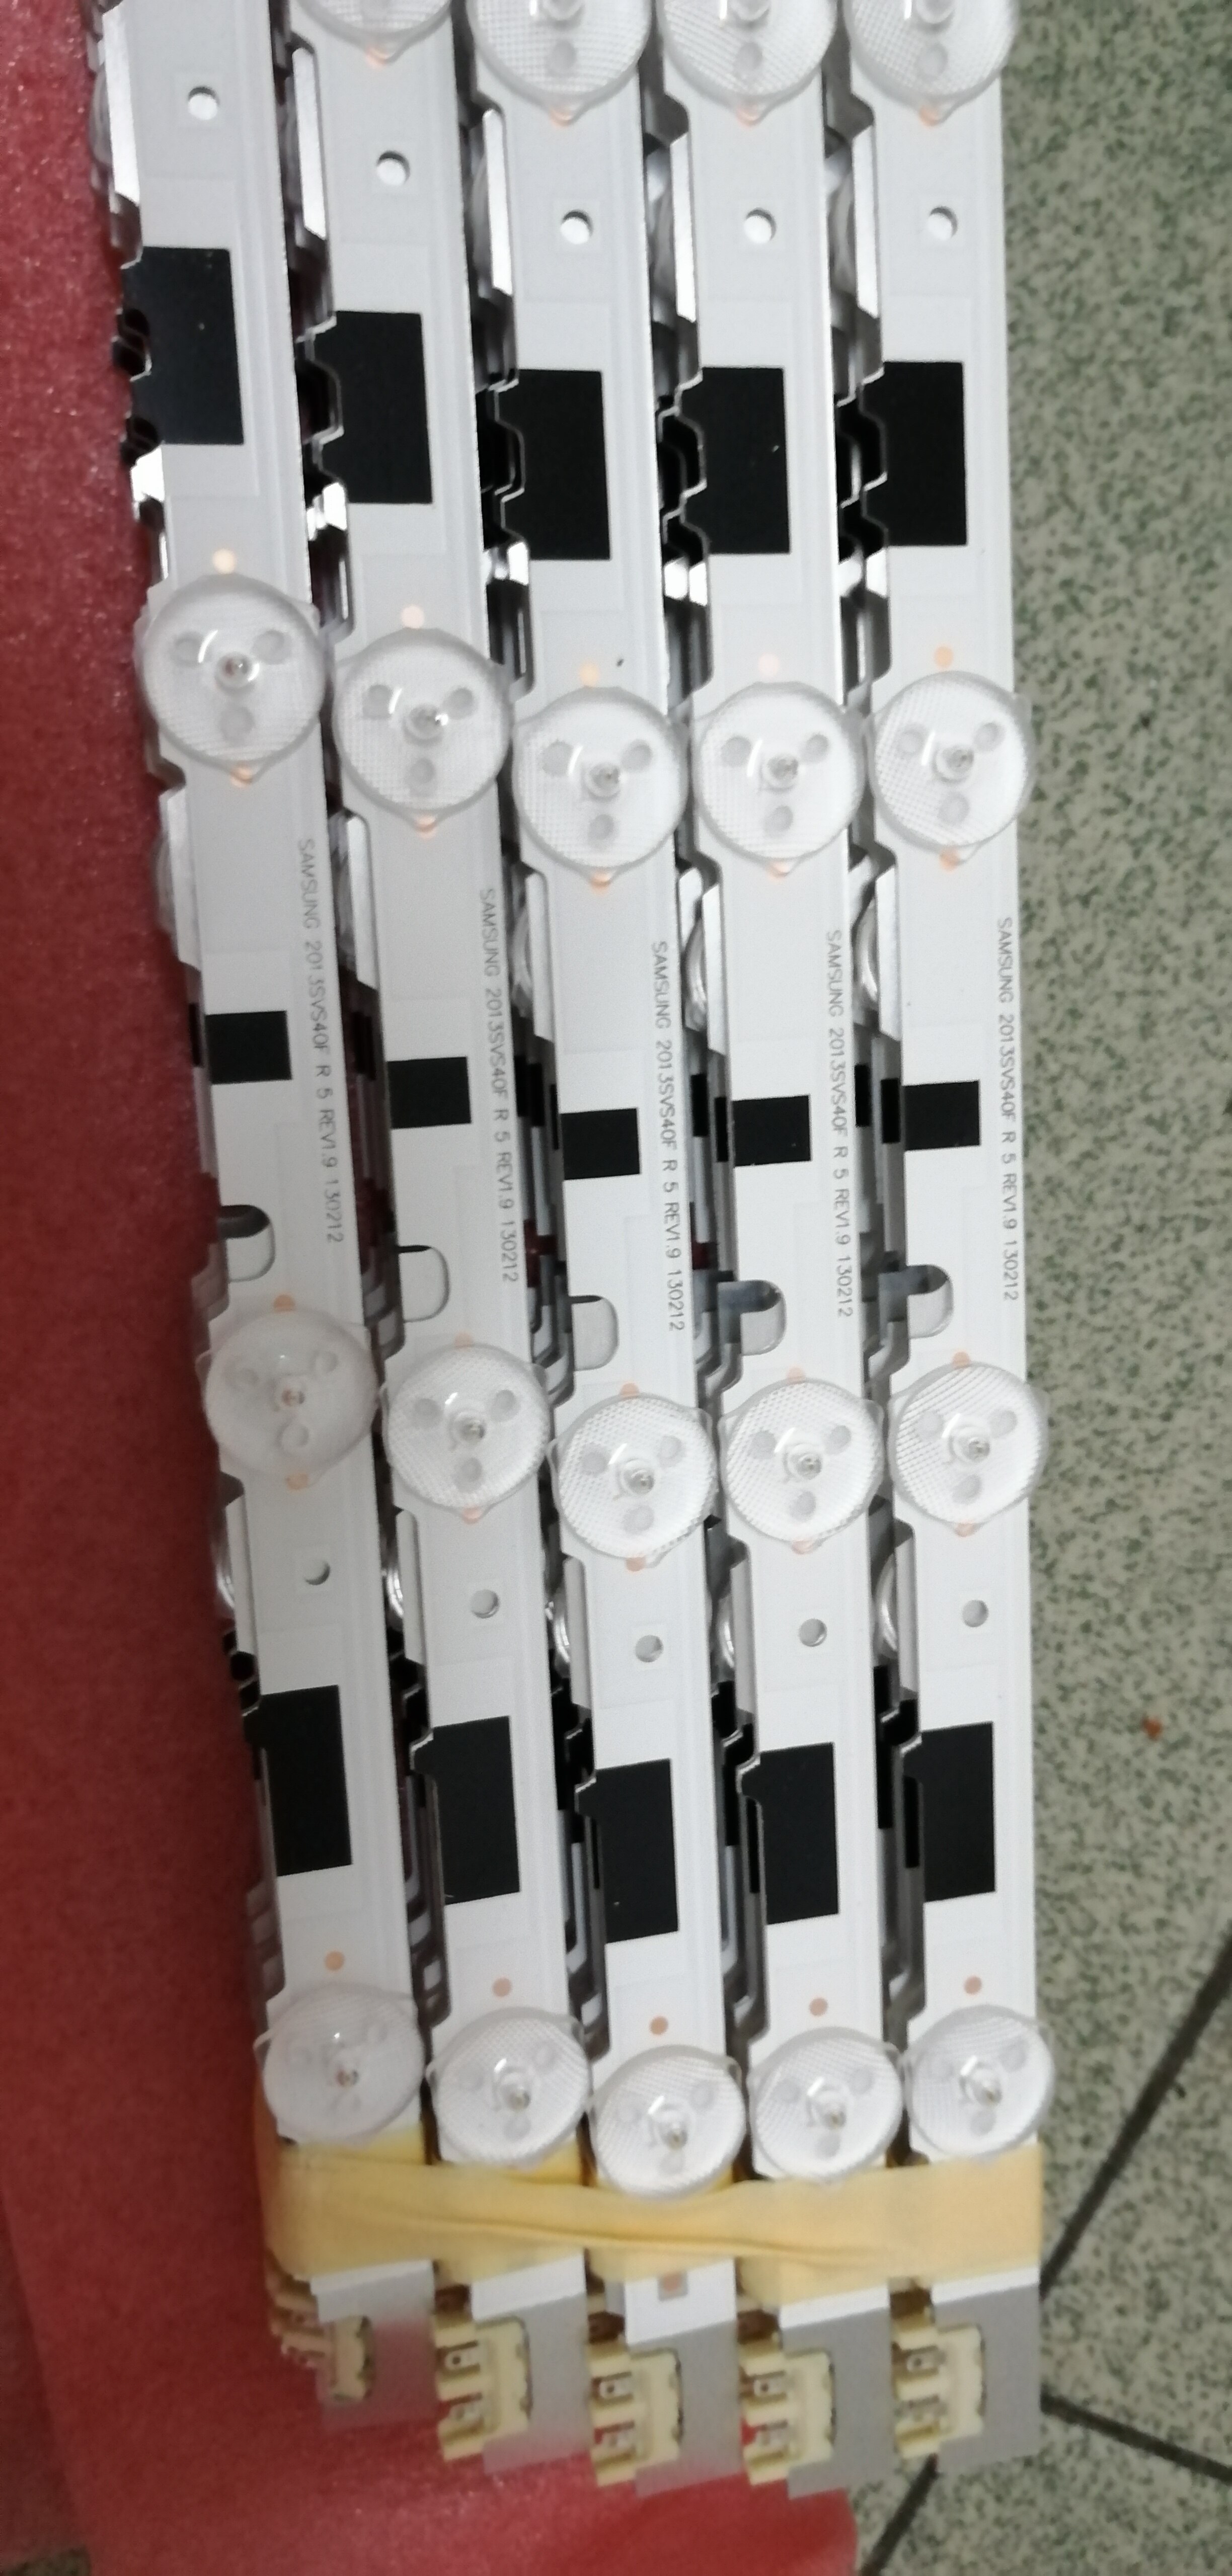 14 stk originale led -strip kredsløb  d2ge-400 sca -r3 d2ge-400 scb -r3 til  ua40 f 5000 arxxr 2013 svs 40f l8/r5